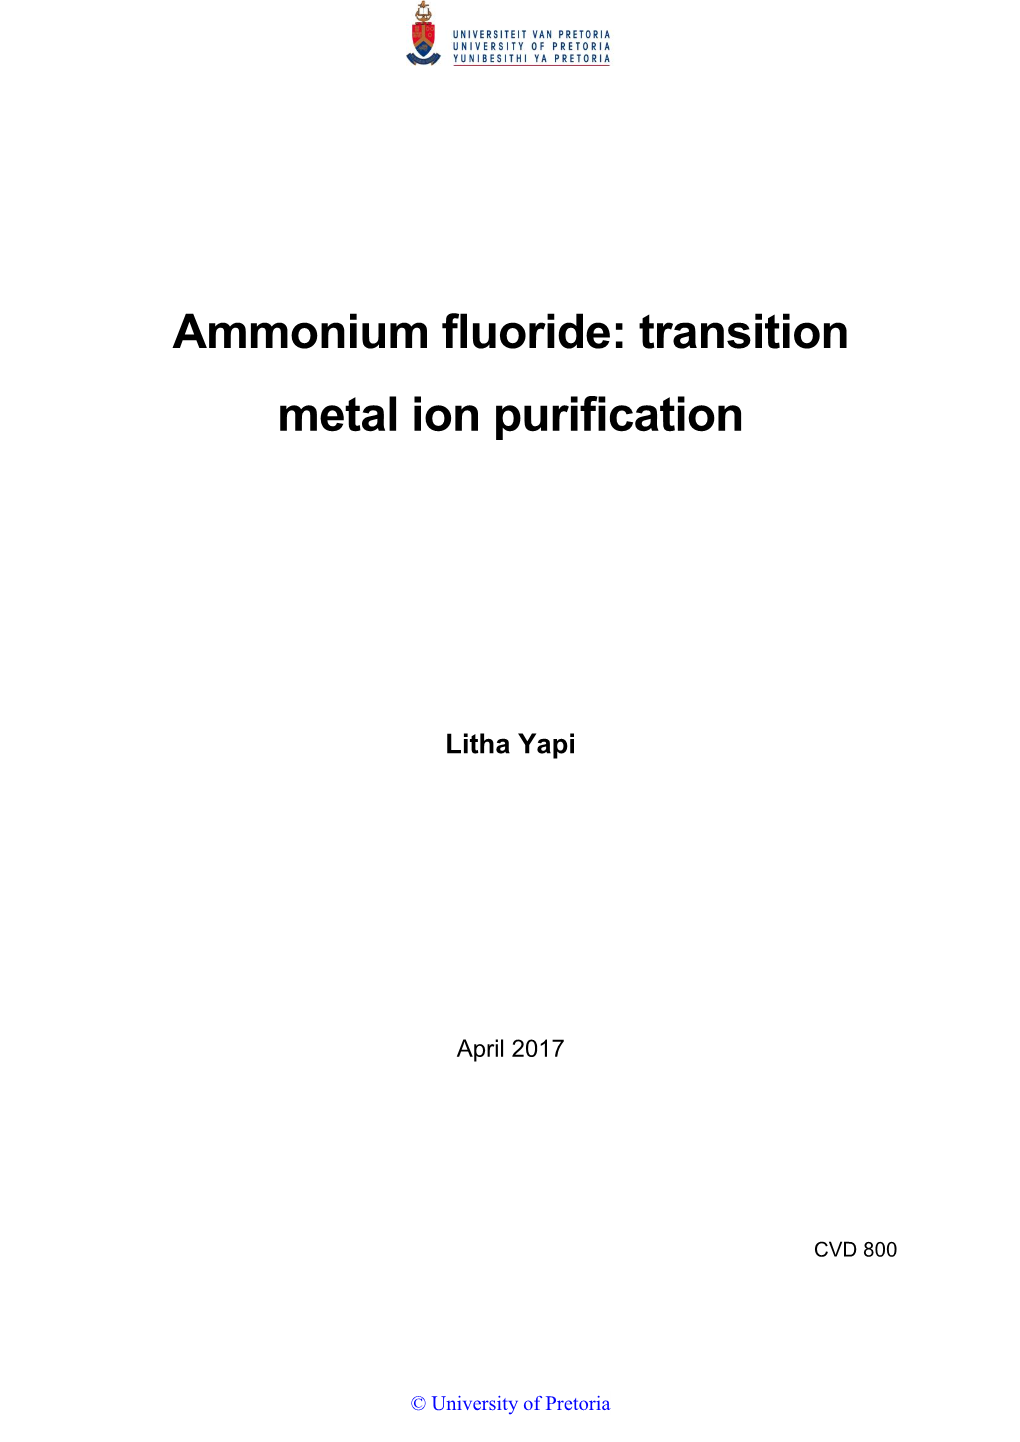 Ammonium Fluoride: Transition Metal Ion Purification